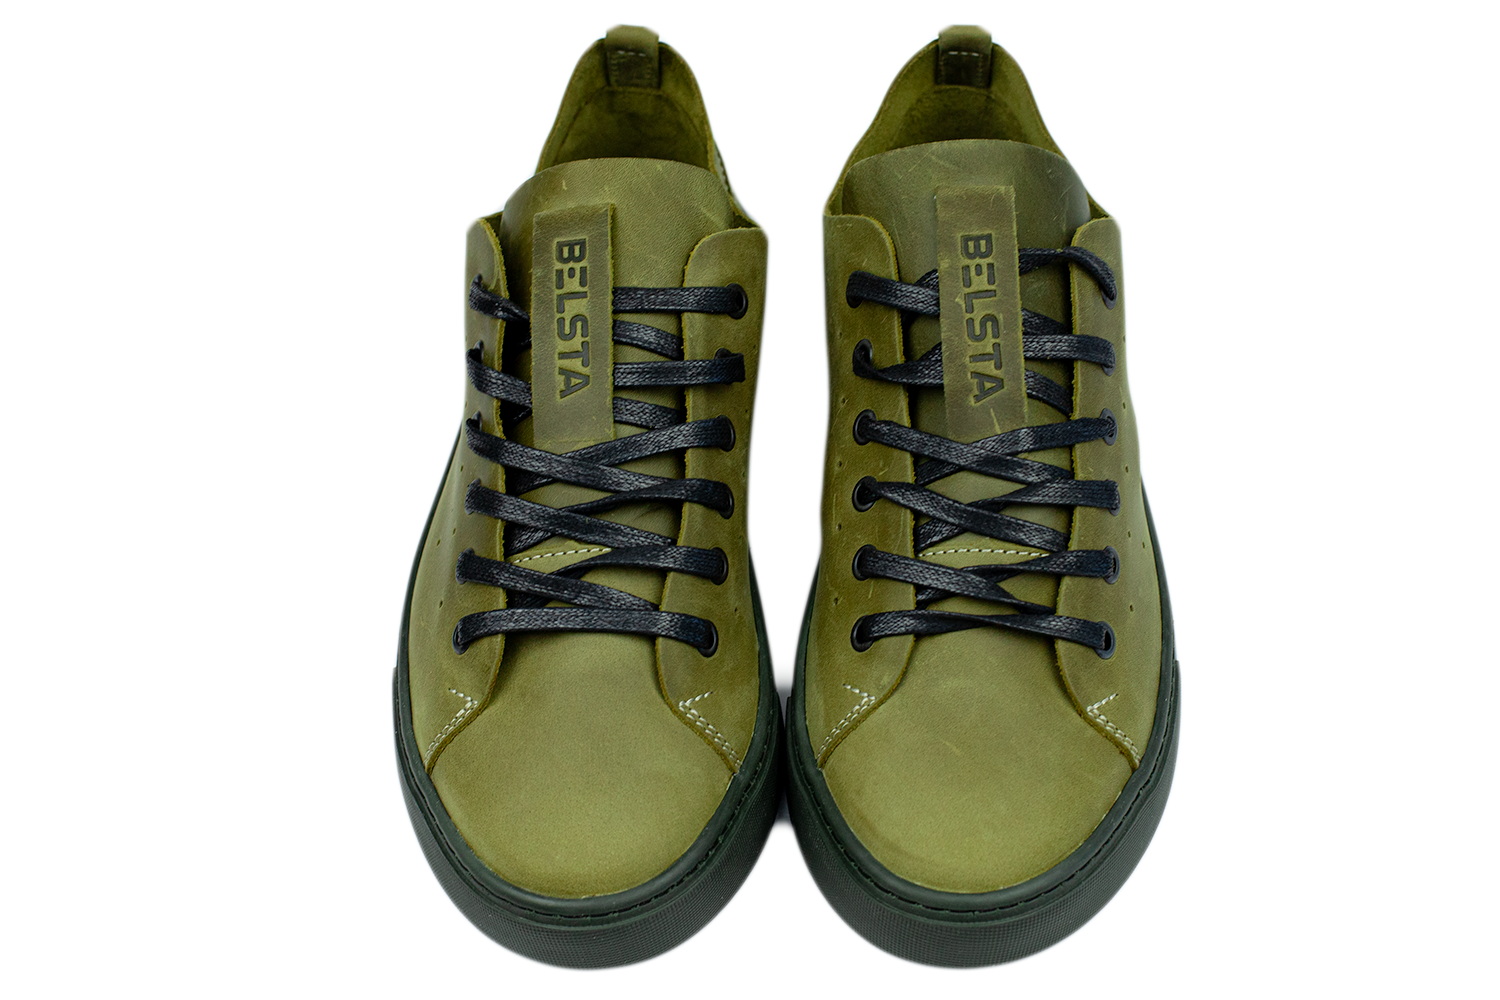 Men's sneakers BELSTA of leather - 2